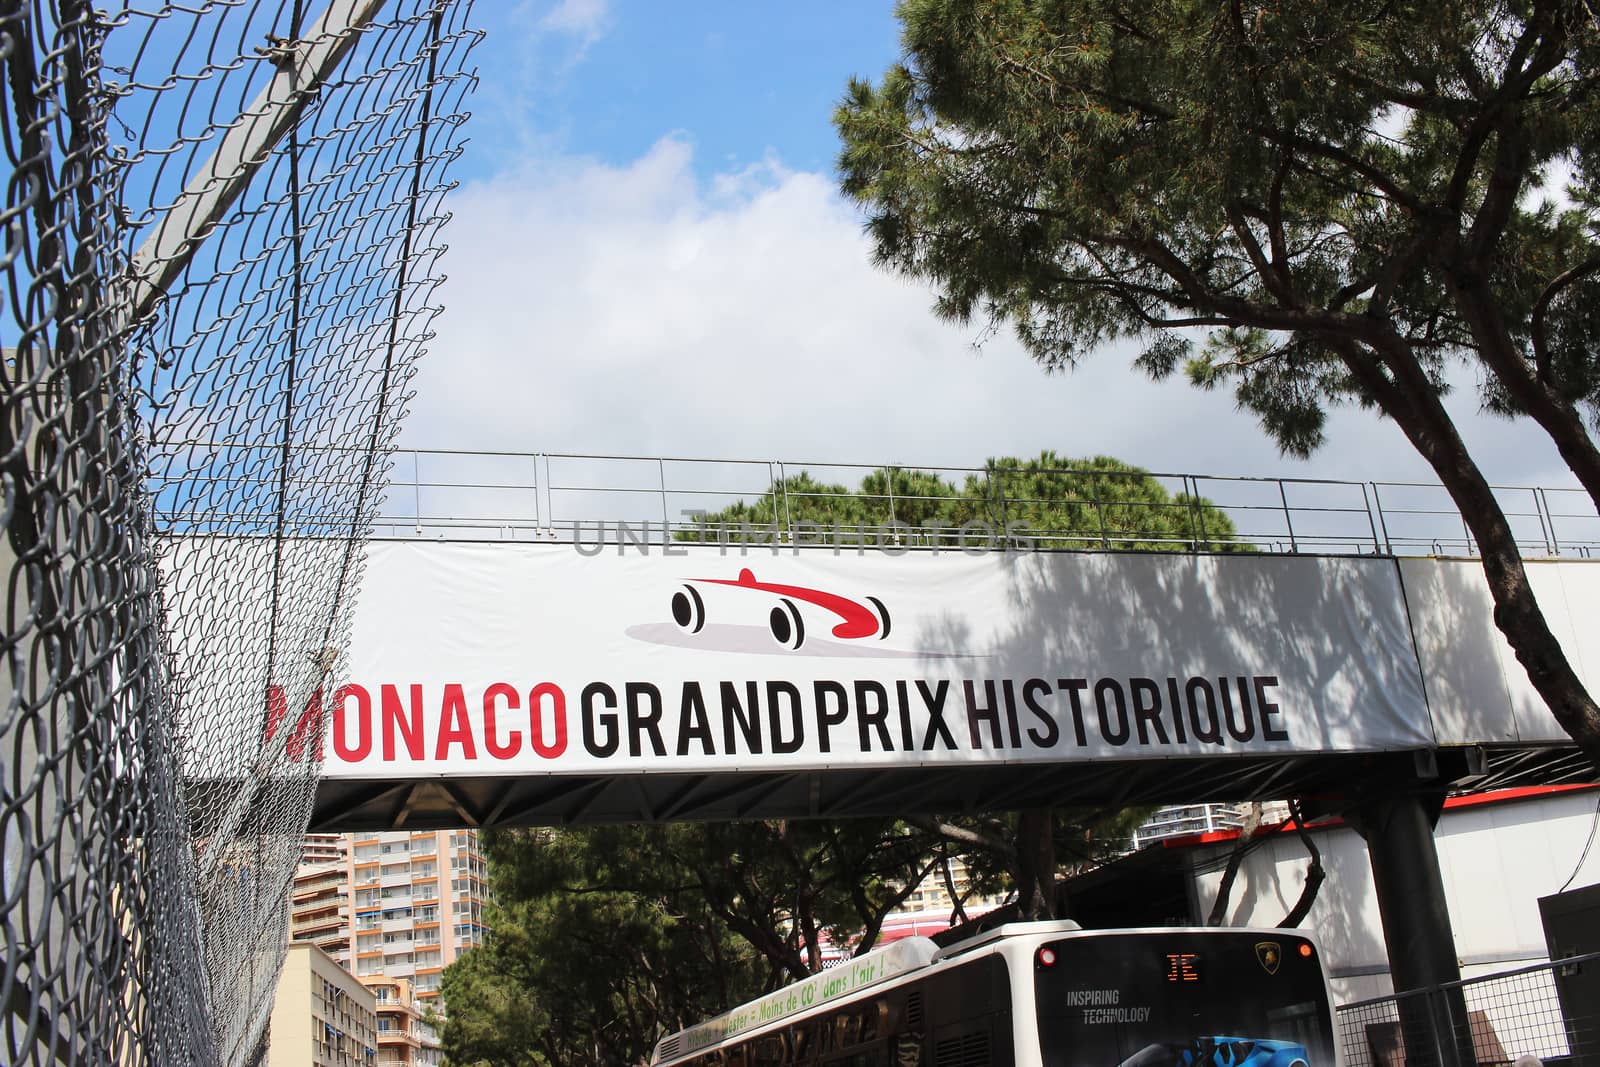 Monte-Carlo, Monaco - April 28, 2016: Red and White Monaco Grand Prix Historique Signboard in Monte-Carlo, Monaco